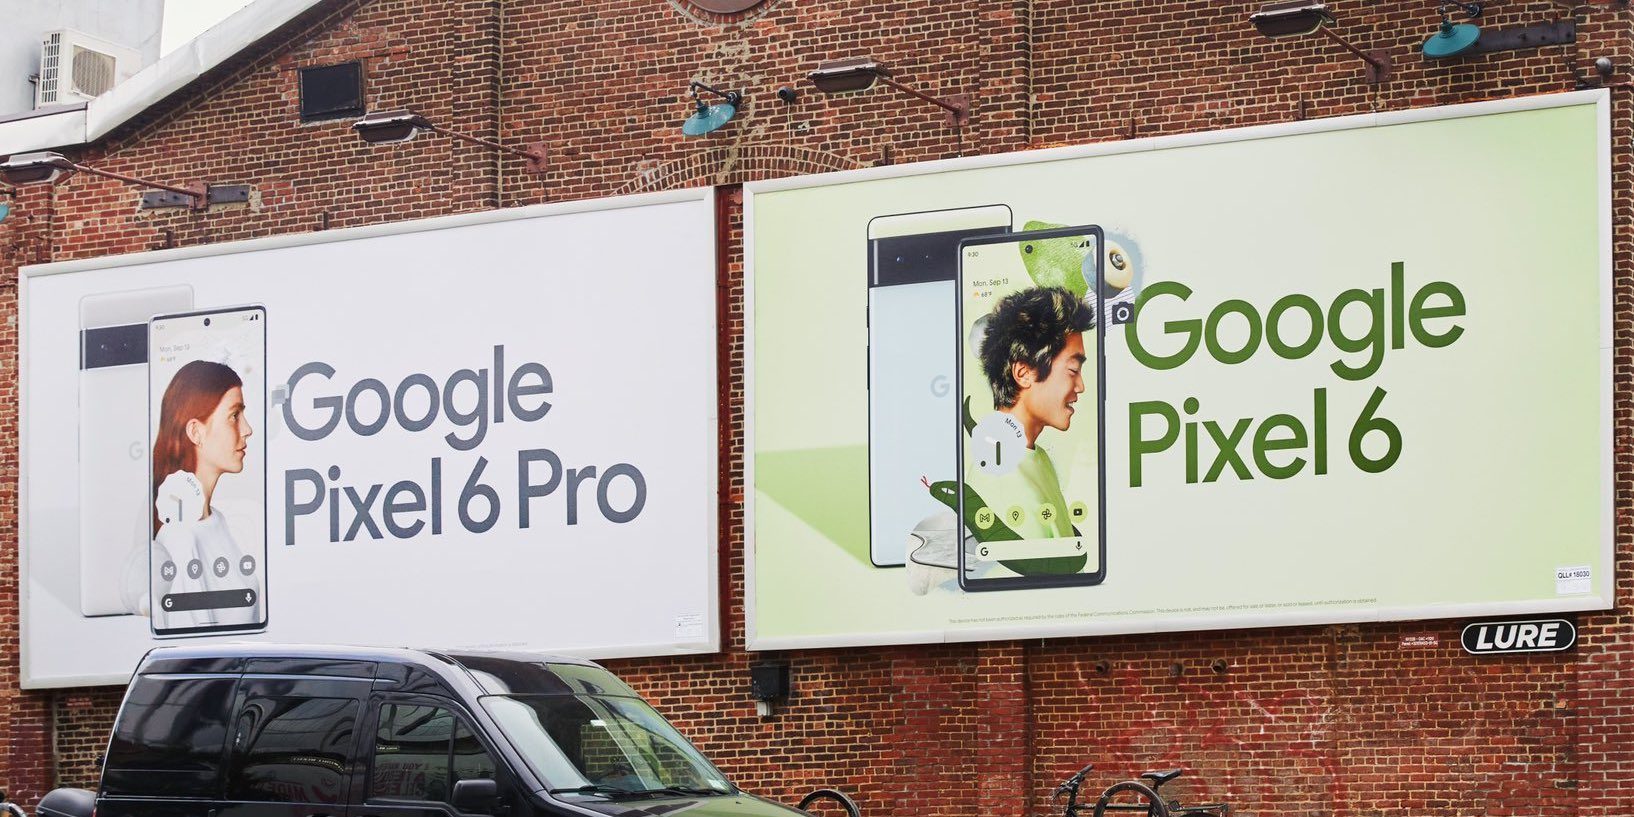 جوجل تبرز تصميم هواتف بيكسل 6 وبيكسل 6 برو في لوحاتها الإعلانية